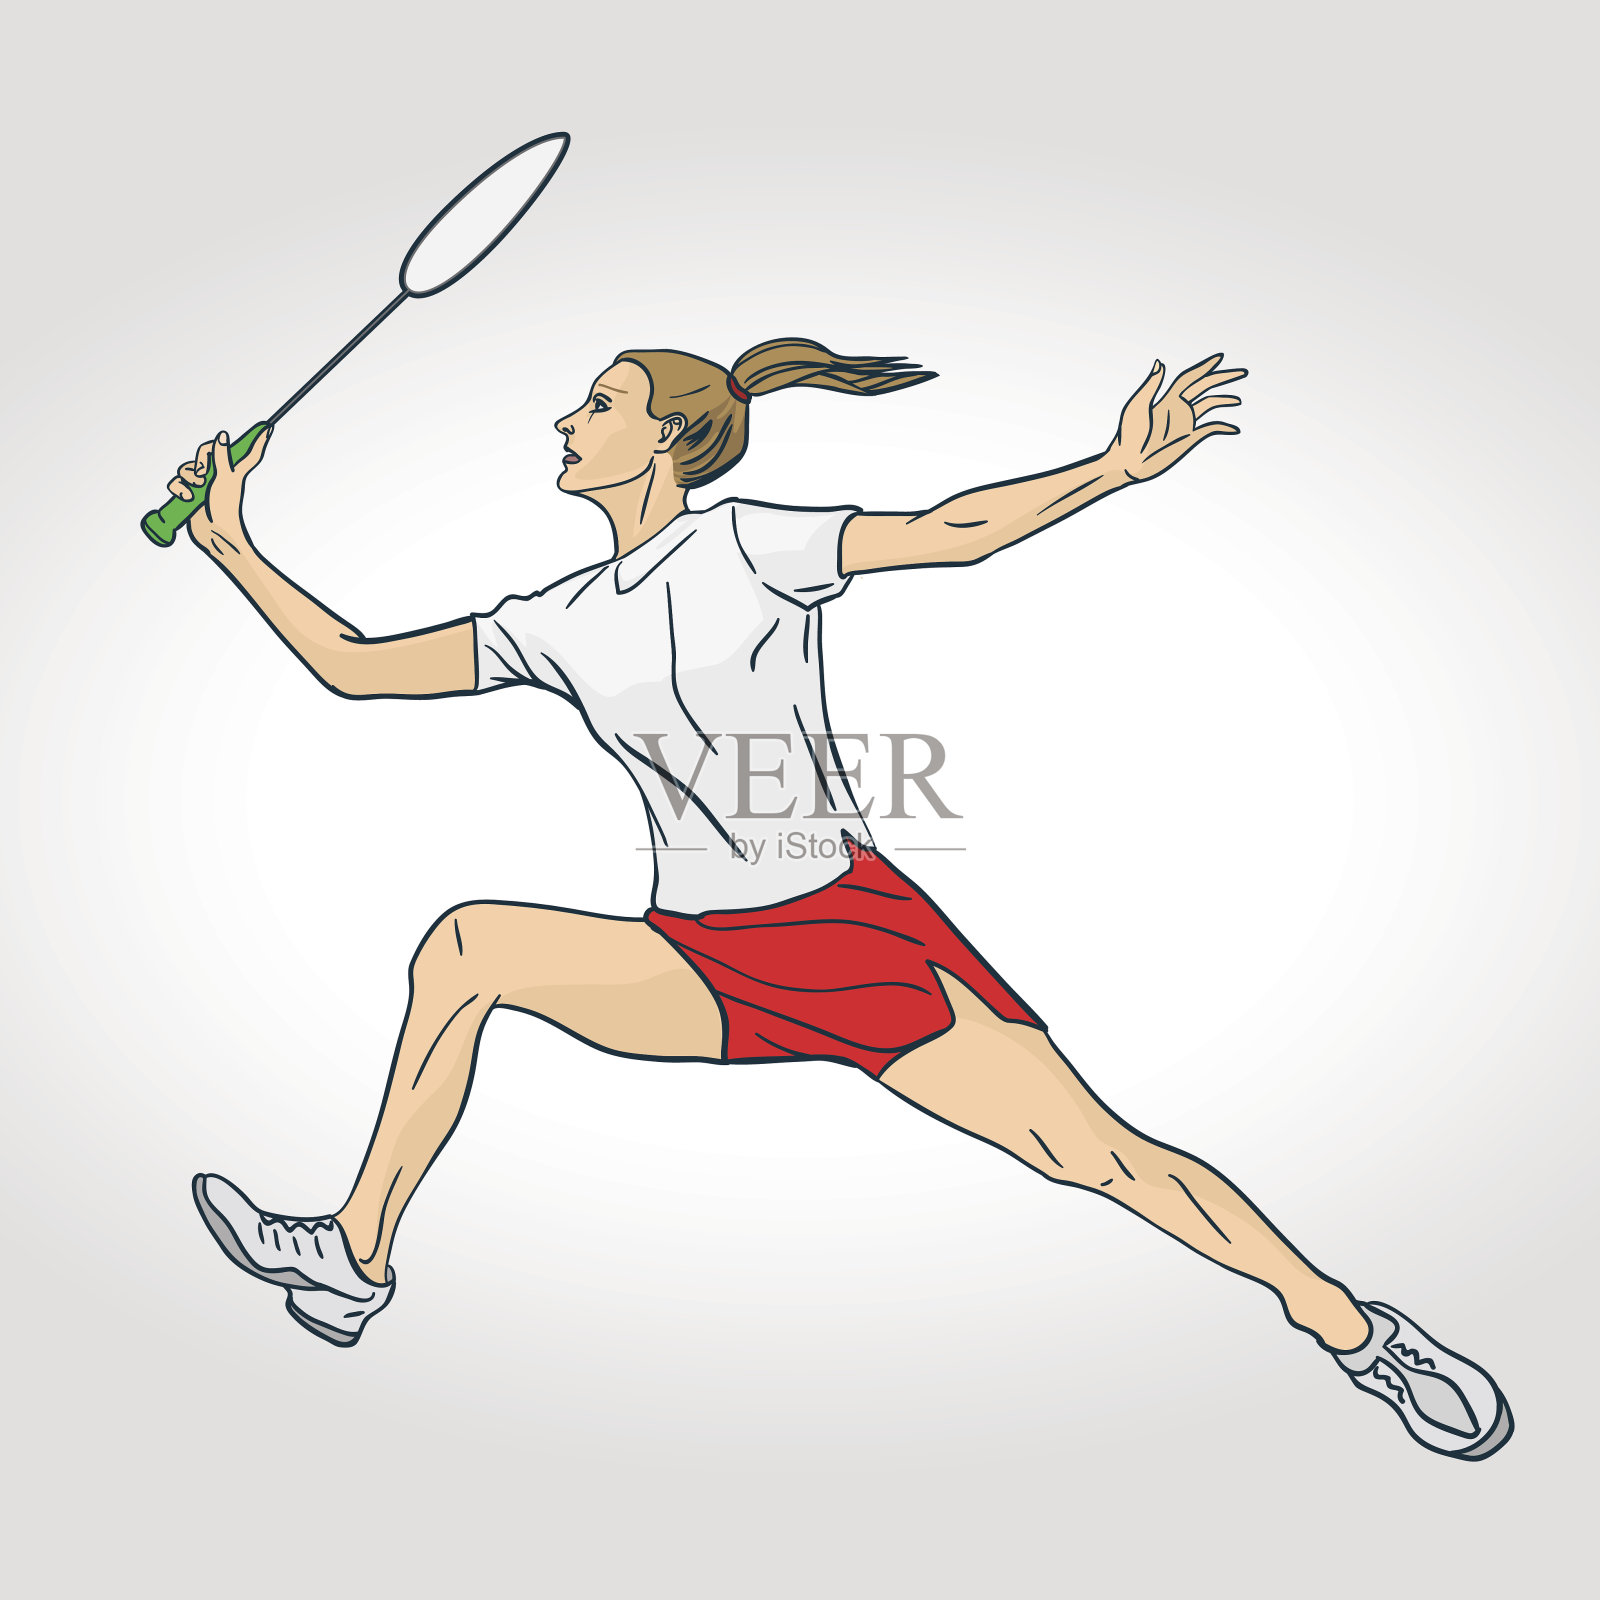 职业女子羽毛球运动员。彩色手绘人物插画图片素材